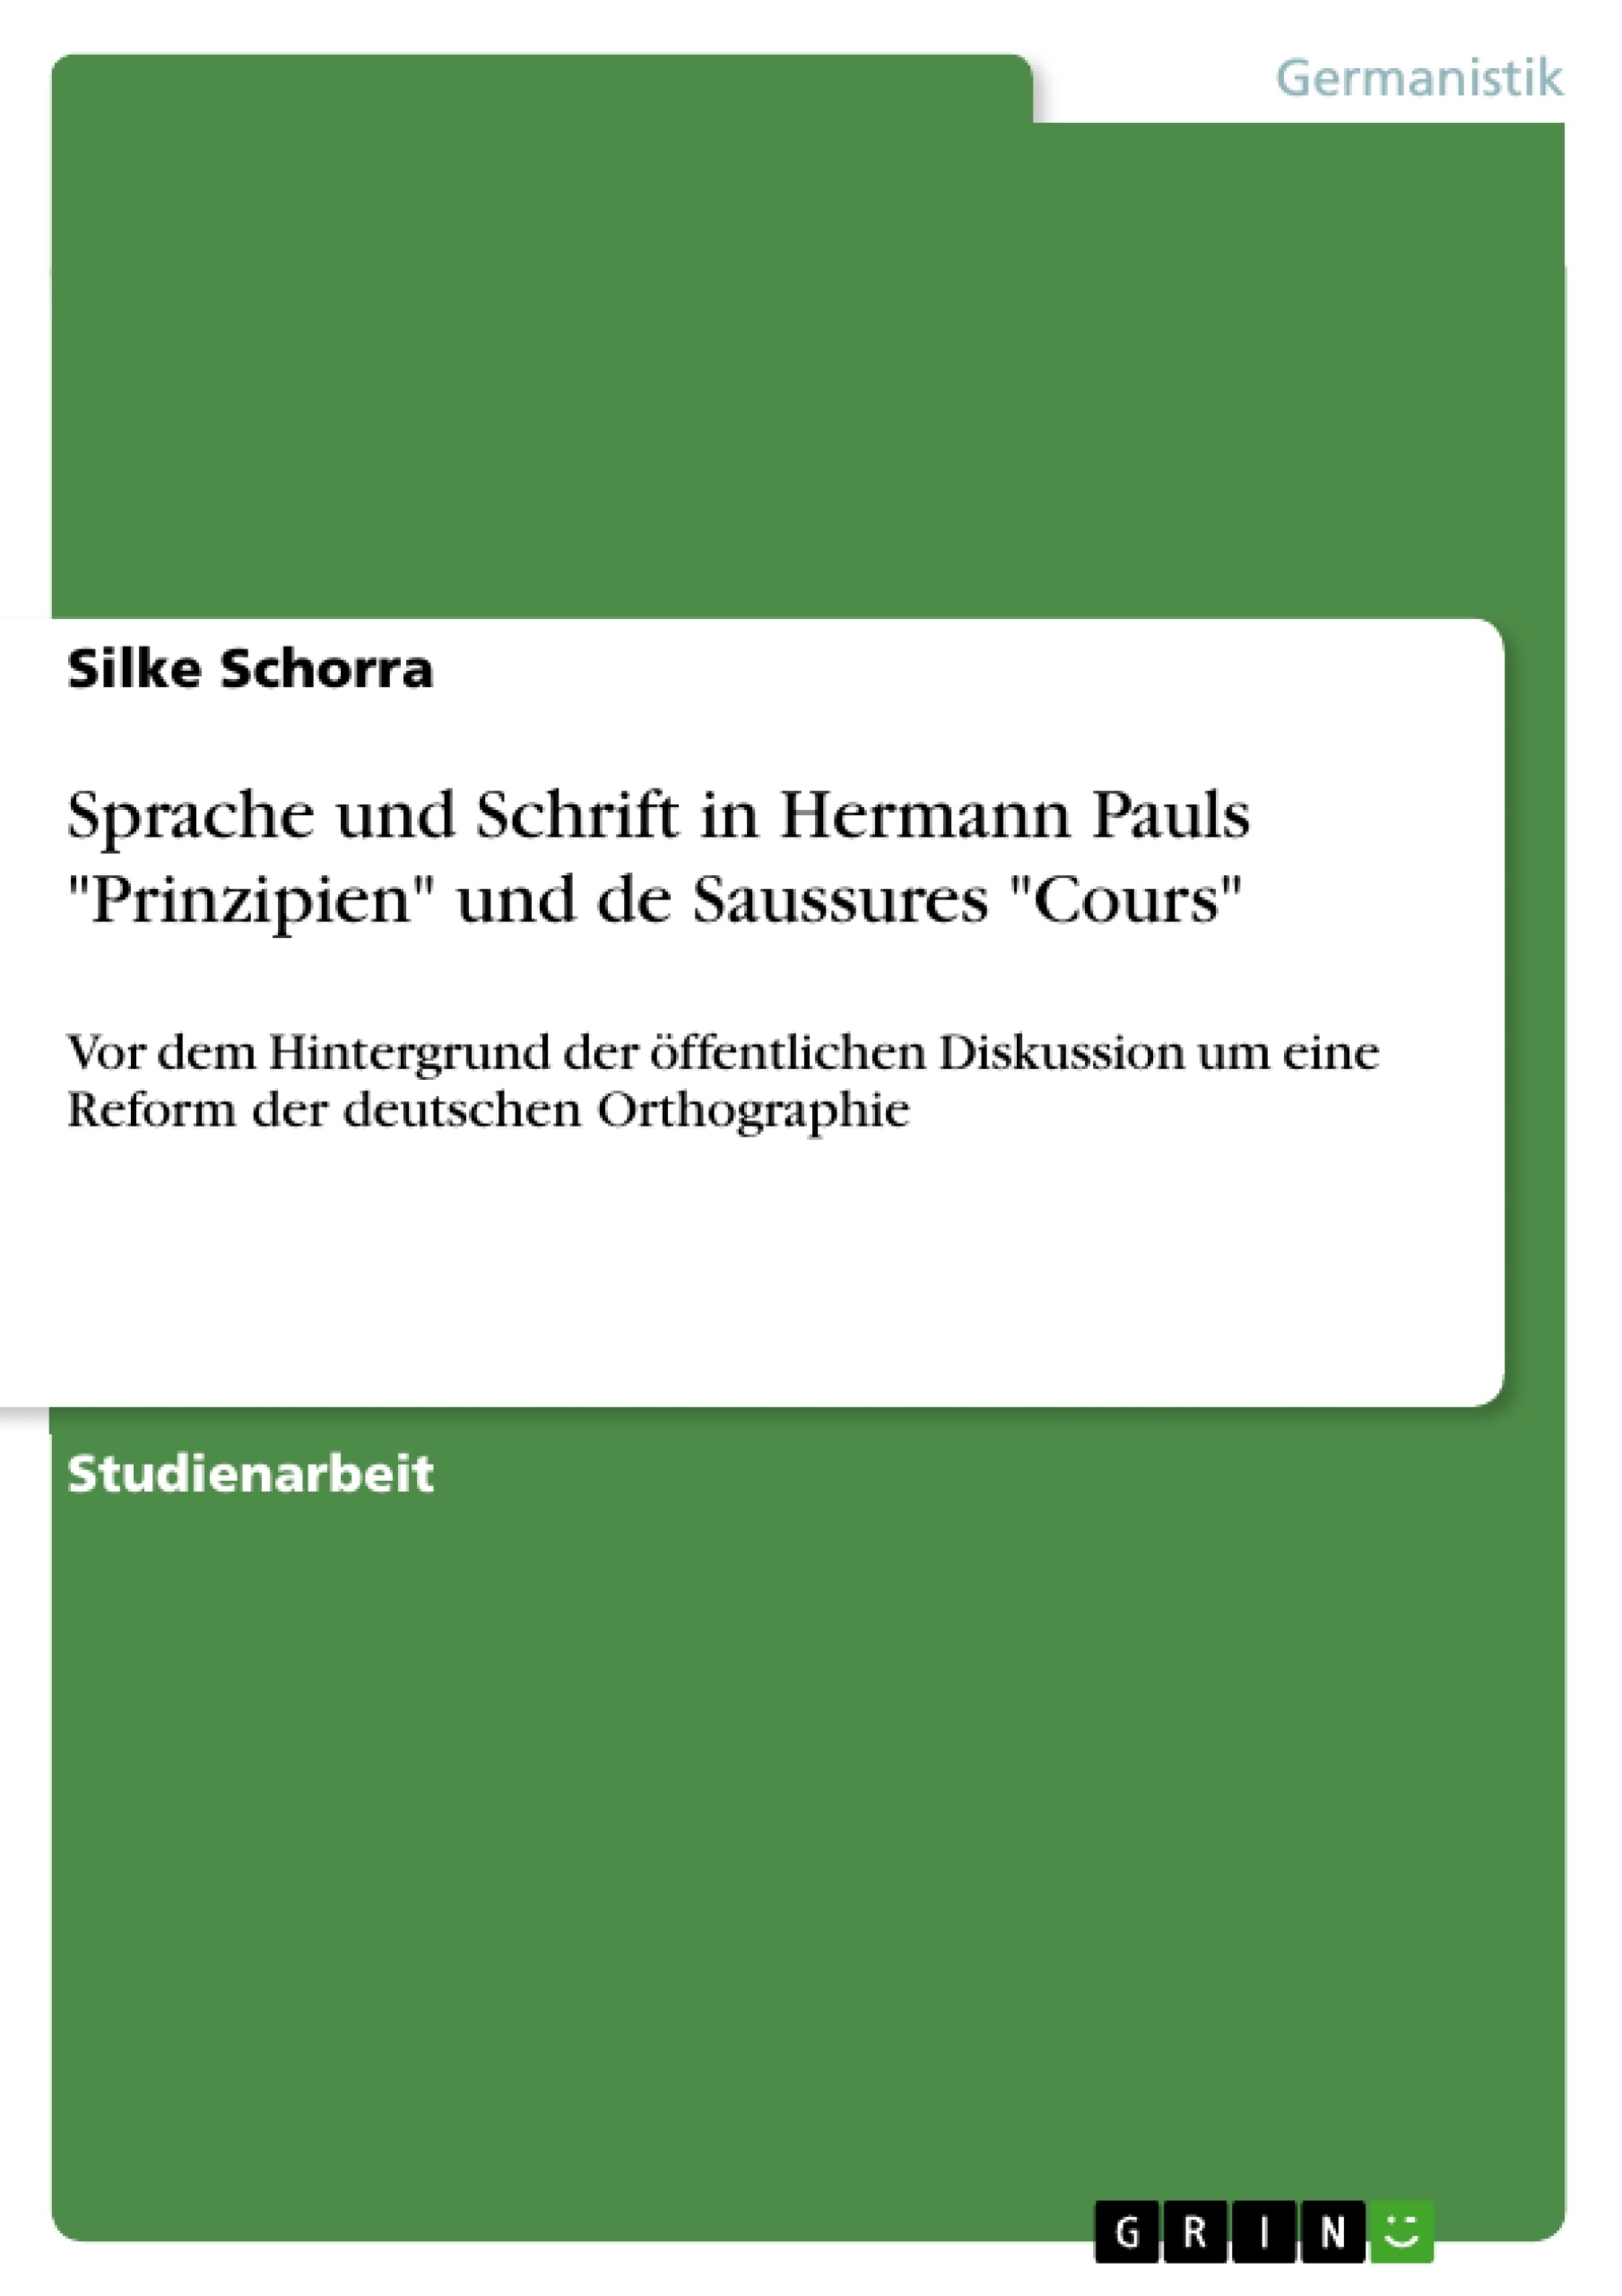 Título: Sprache und Schrift in Hermann Pauls "Prinzipien" und de Saussures "Cours"